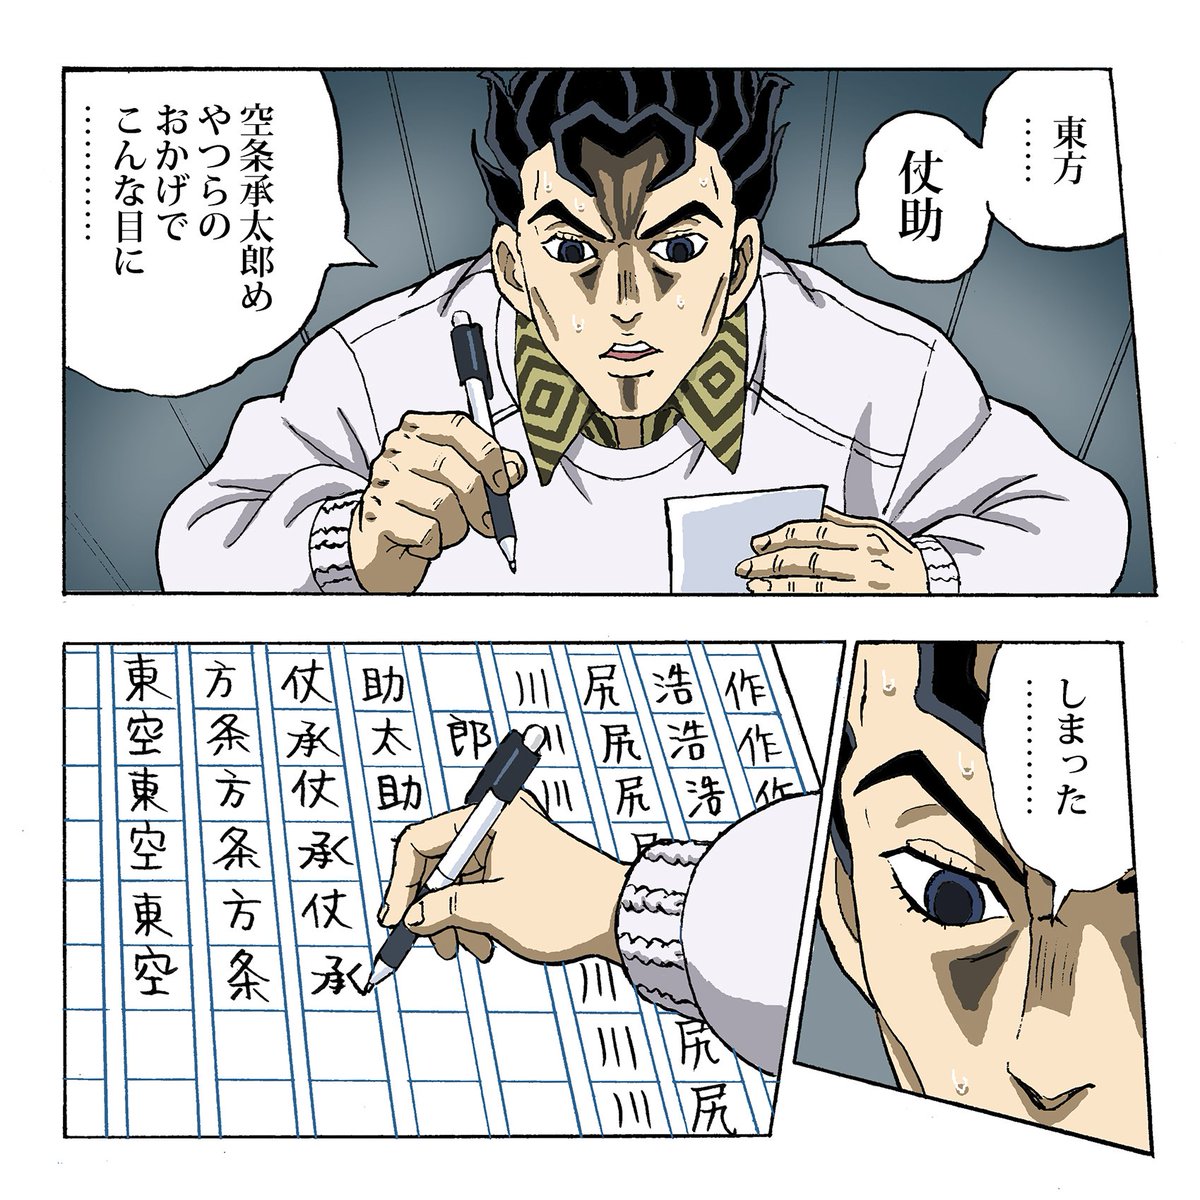 名前を書く練習をする吉良吉影
#jojo_anime 